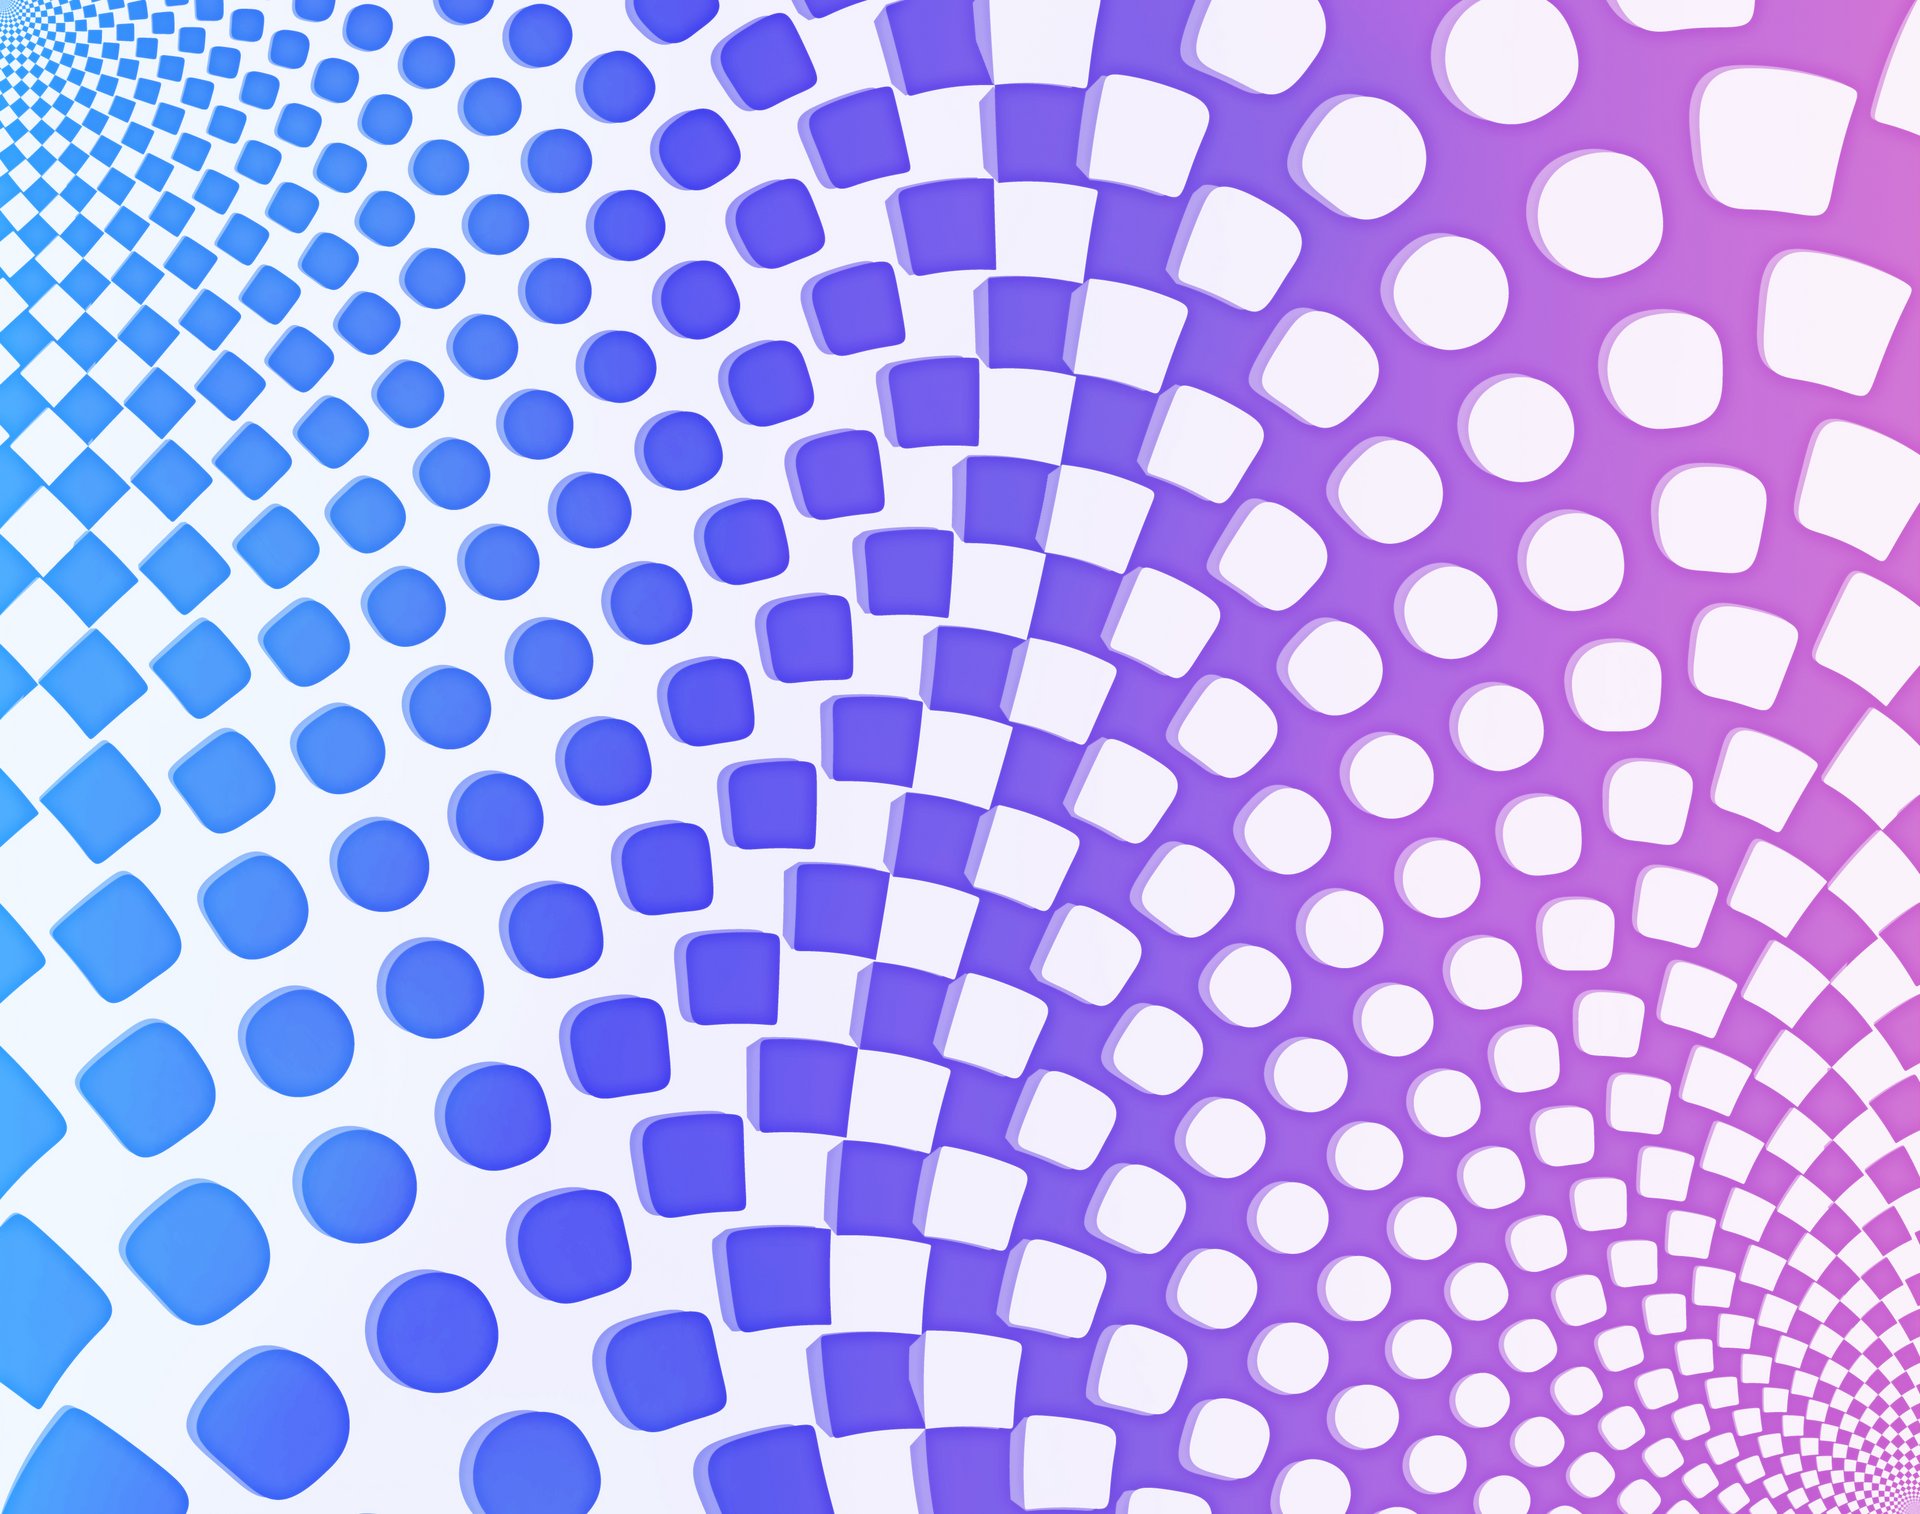 Mønster af rundede kvadrater der svinger i farvede spiraler. Farverne blå over i pink og hvid.